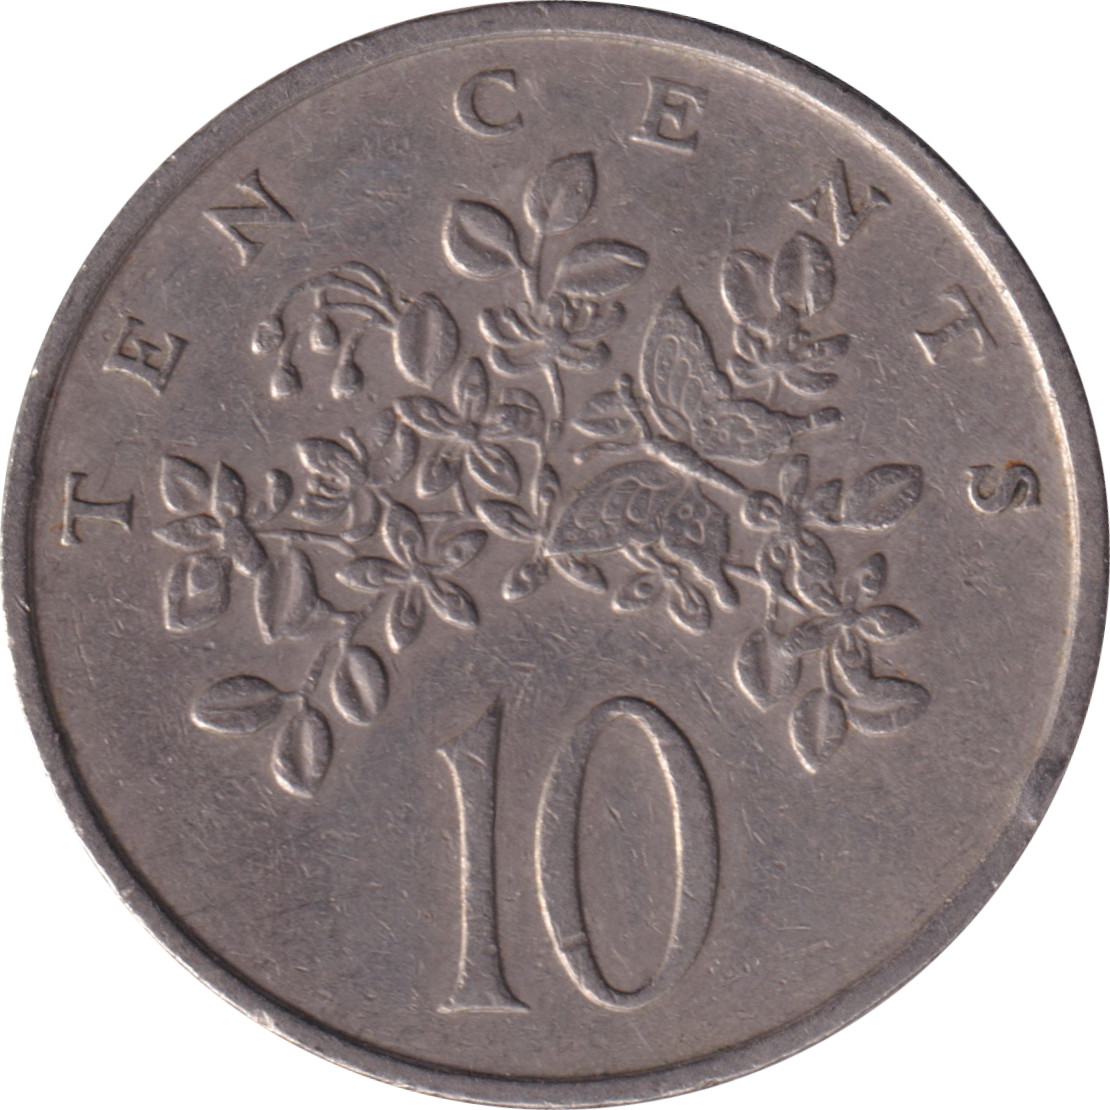 10 cents - Branches - Grande légende